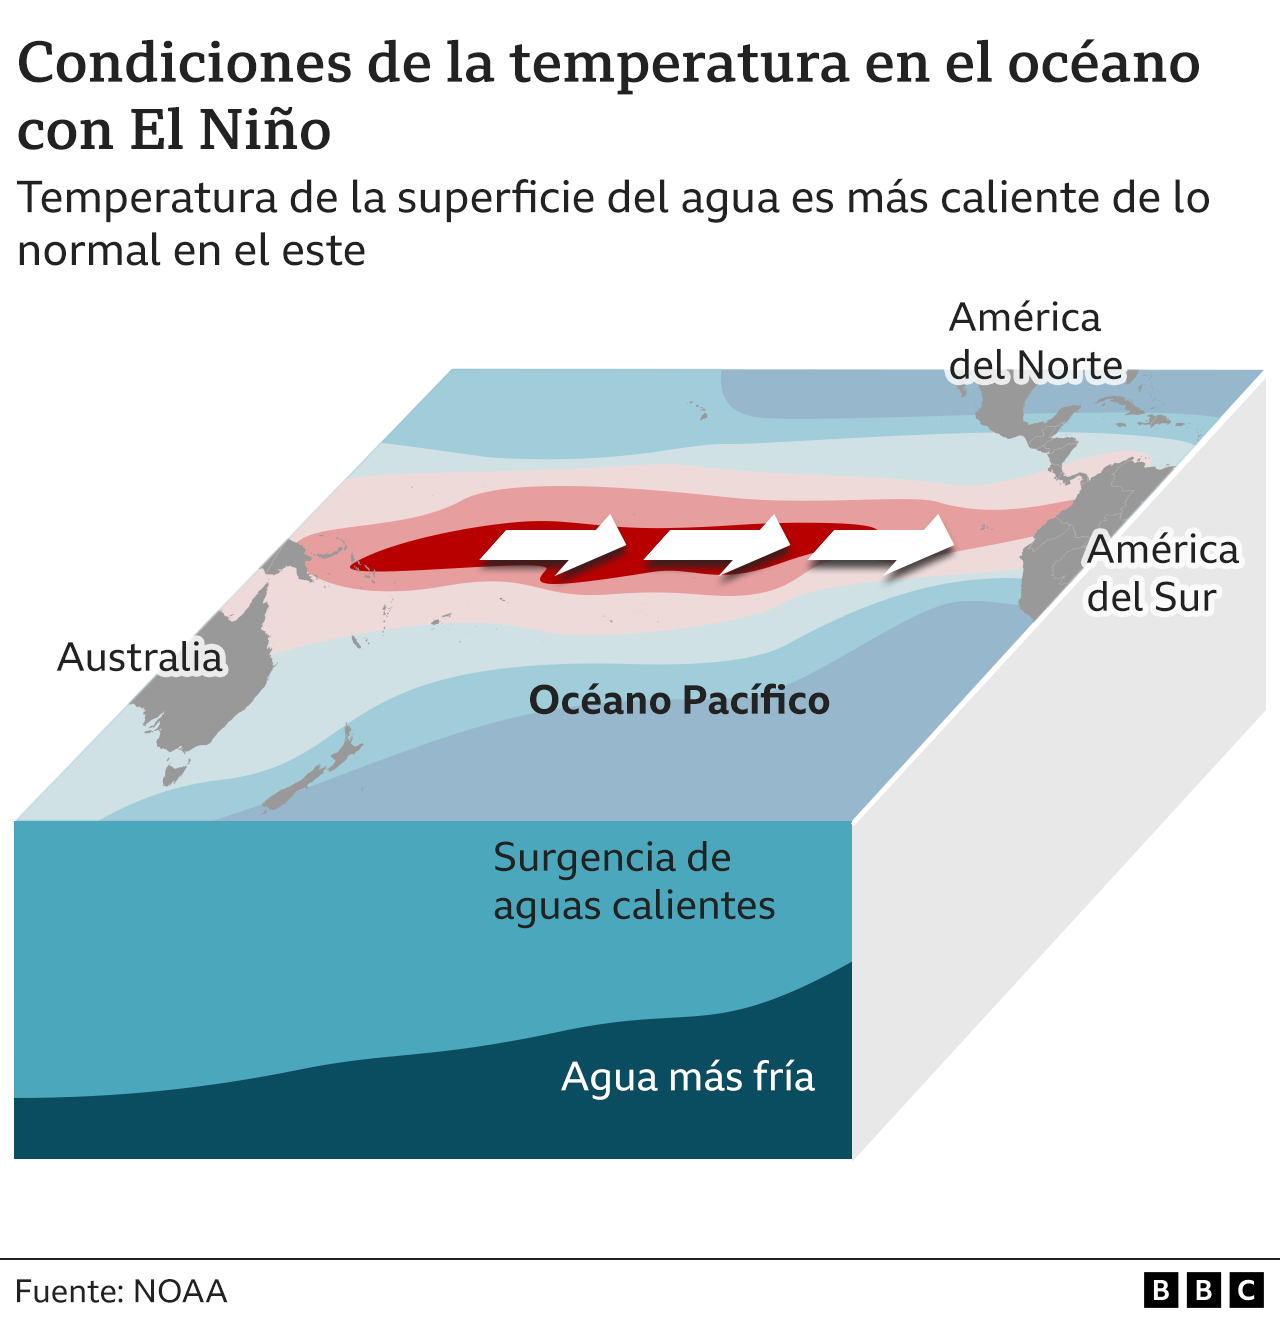 Gráfico mostrando las condiciones de temperatura en el océano cuando ocurre El Niño